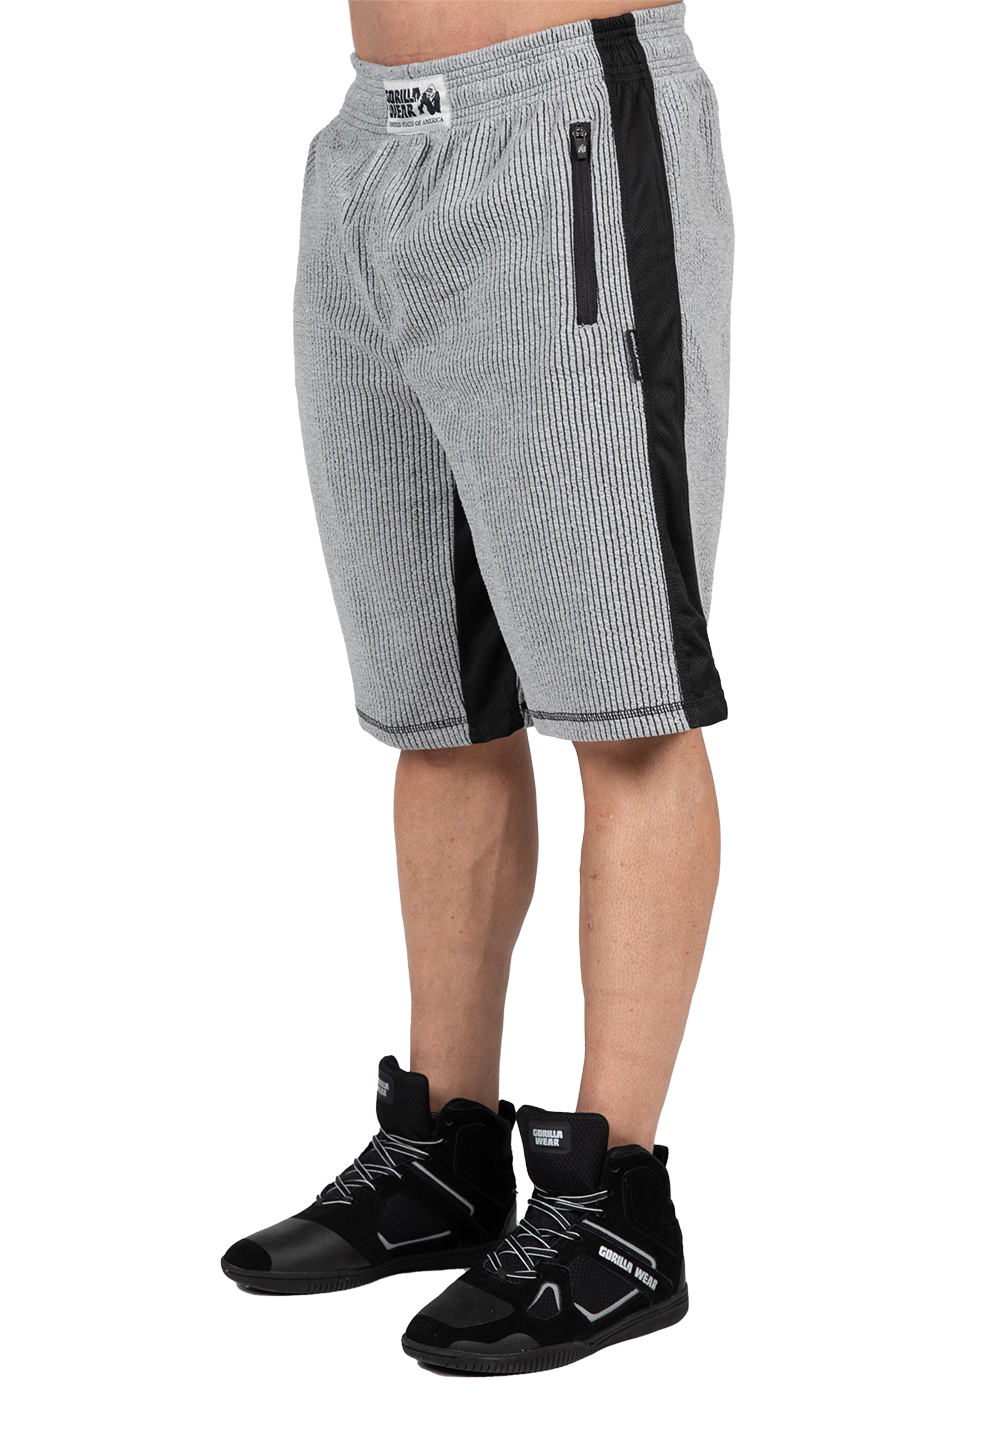 Шорты Augustine Old School Shorts – Gray от Gorilla Wear